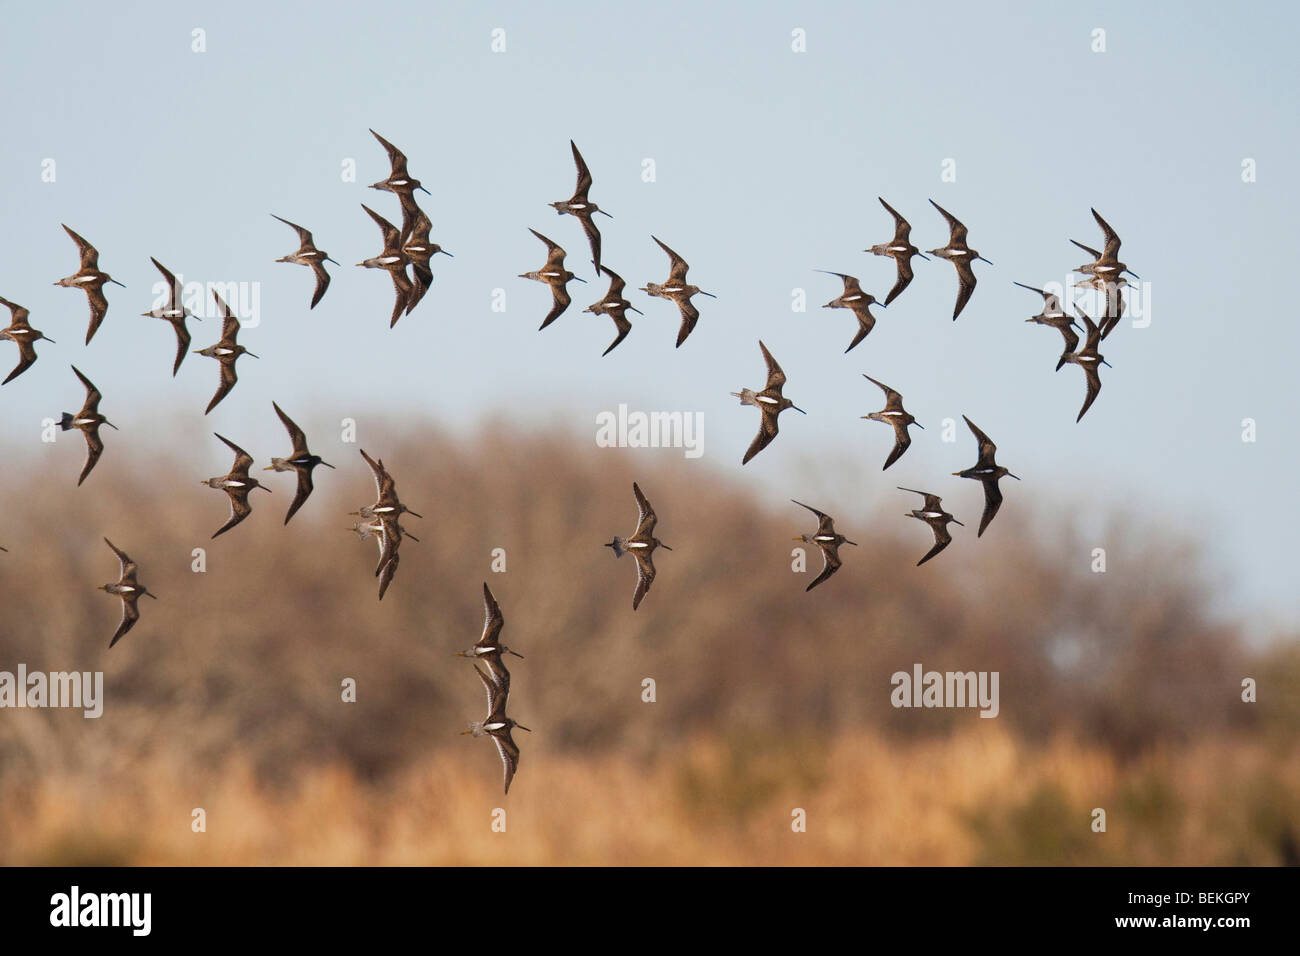 Long-billed Dowitcher (Limnodromus scolopaceus), flock in flight, Welder Wildlife Refuge, Sinton, Texas, USA Stock Photo